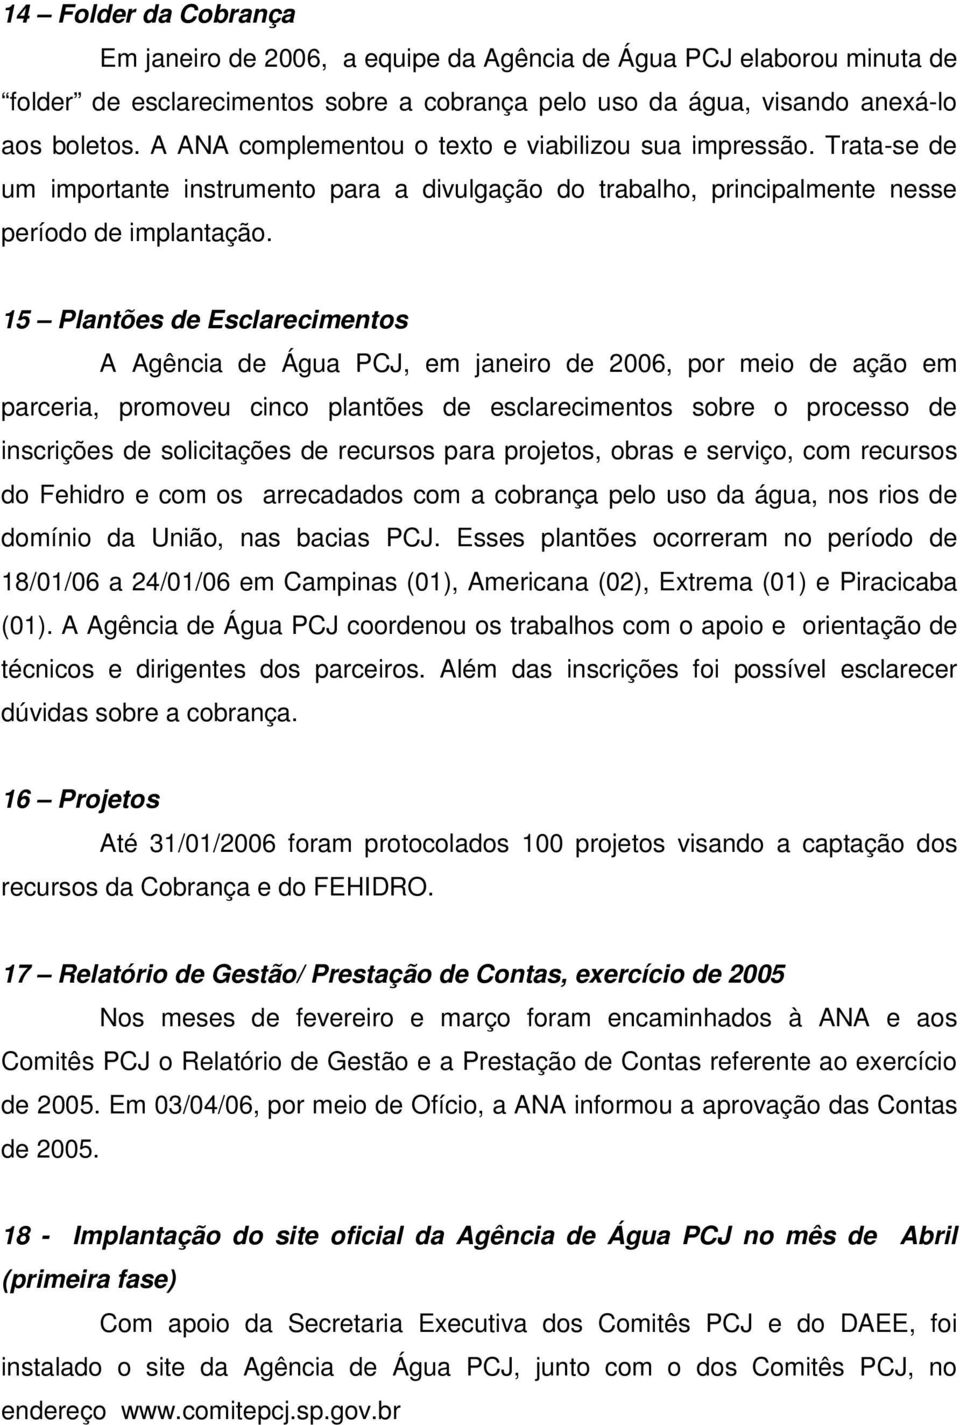 15 Plantões de Esclarecimentos A Agência de Água PCJ, em janeiro de 2006, por meio de ação em parceria, promoveu cinco plantões de esclarecimentos sobre o processo de inscrições de solicitações de